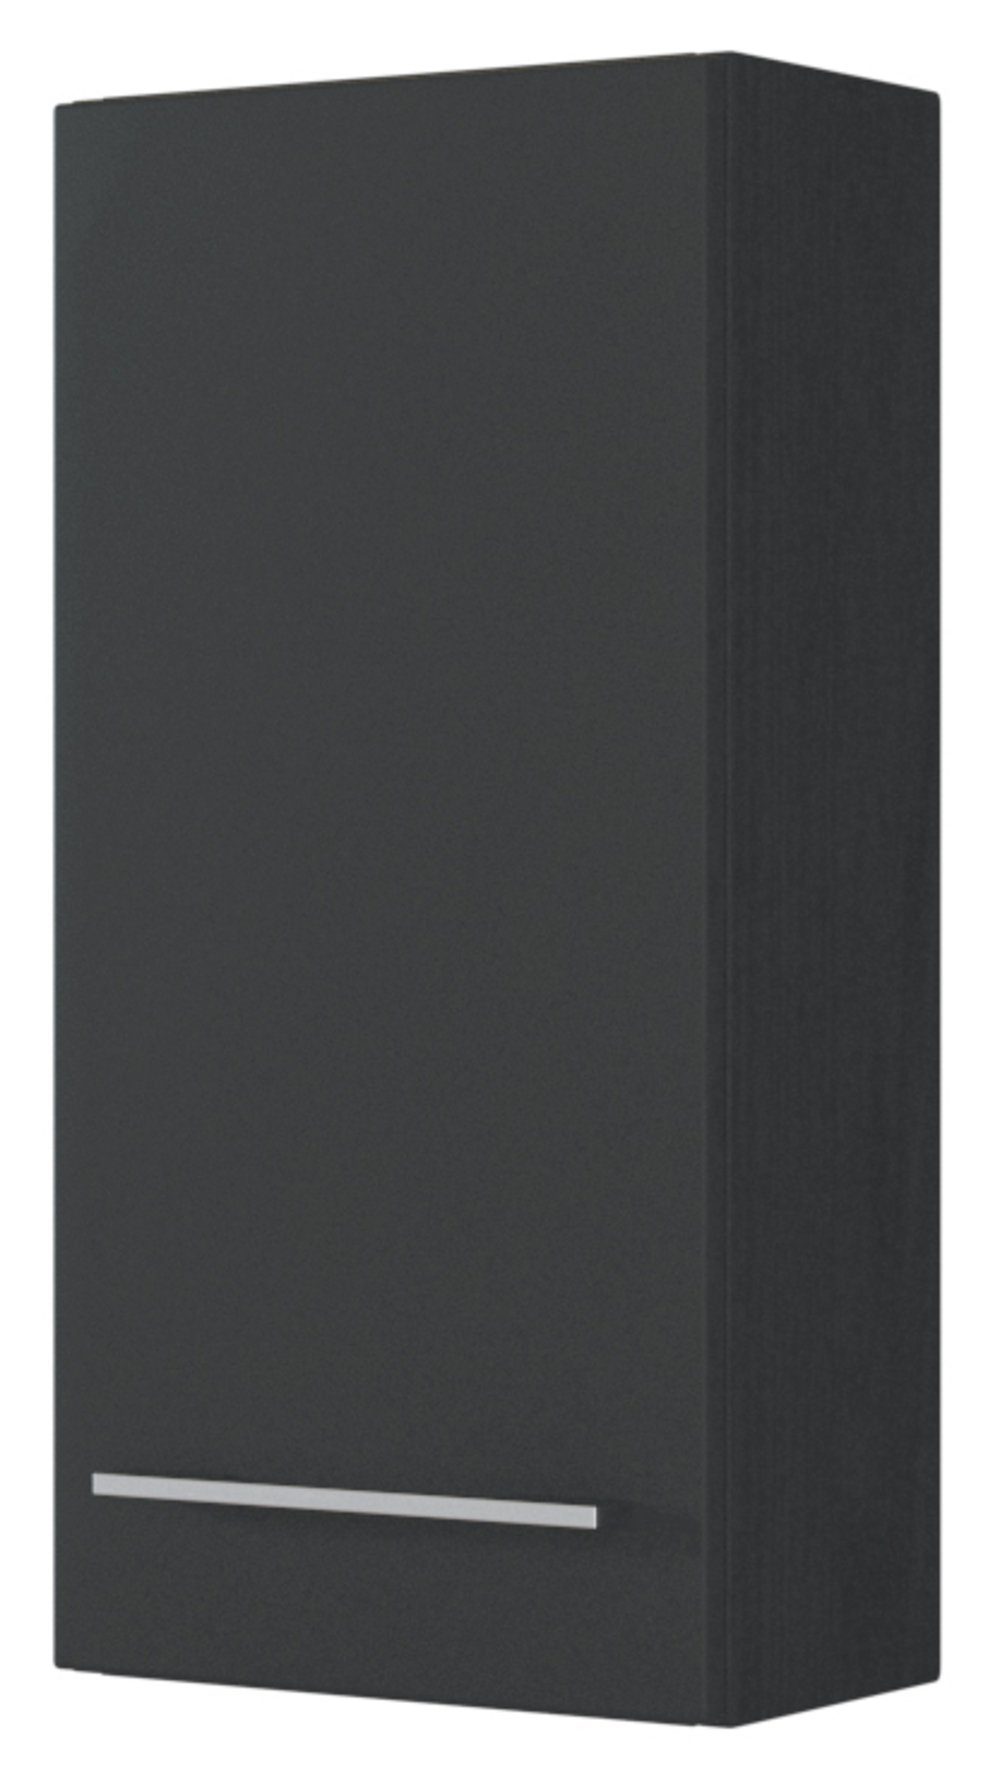 HELD MÖBEL Hängeschrank Davos 30 cm graphit/matt grau Korpus graphit / Front matt grau | graphit